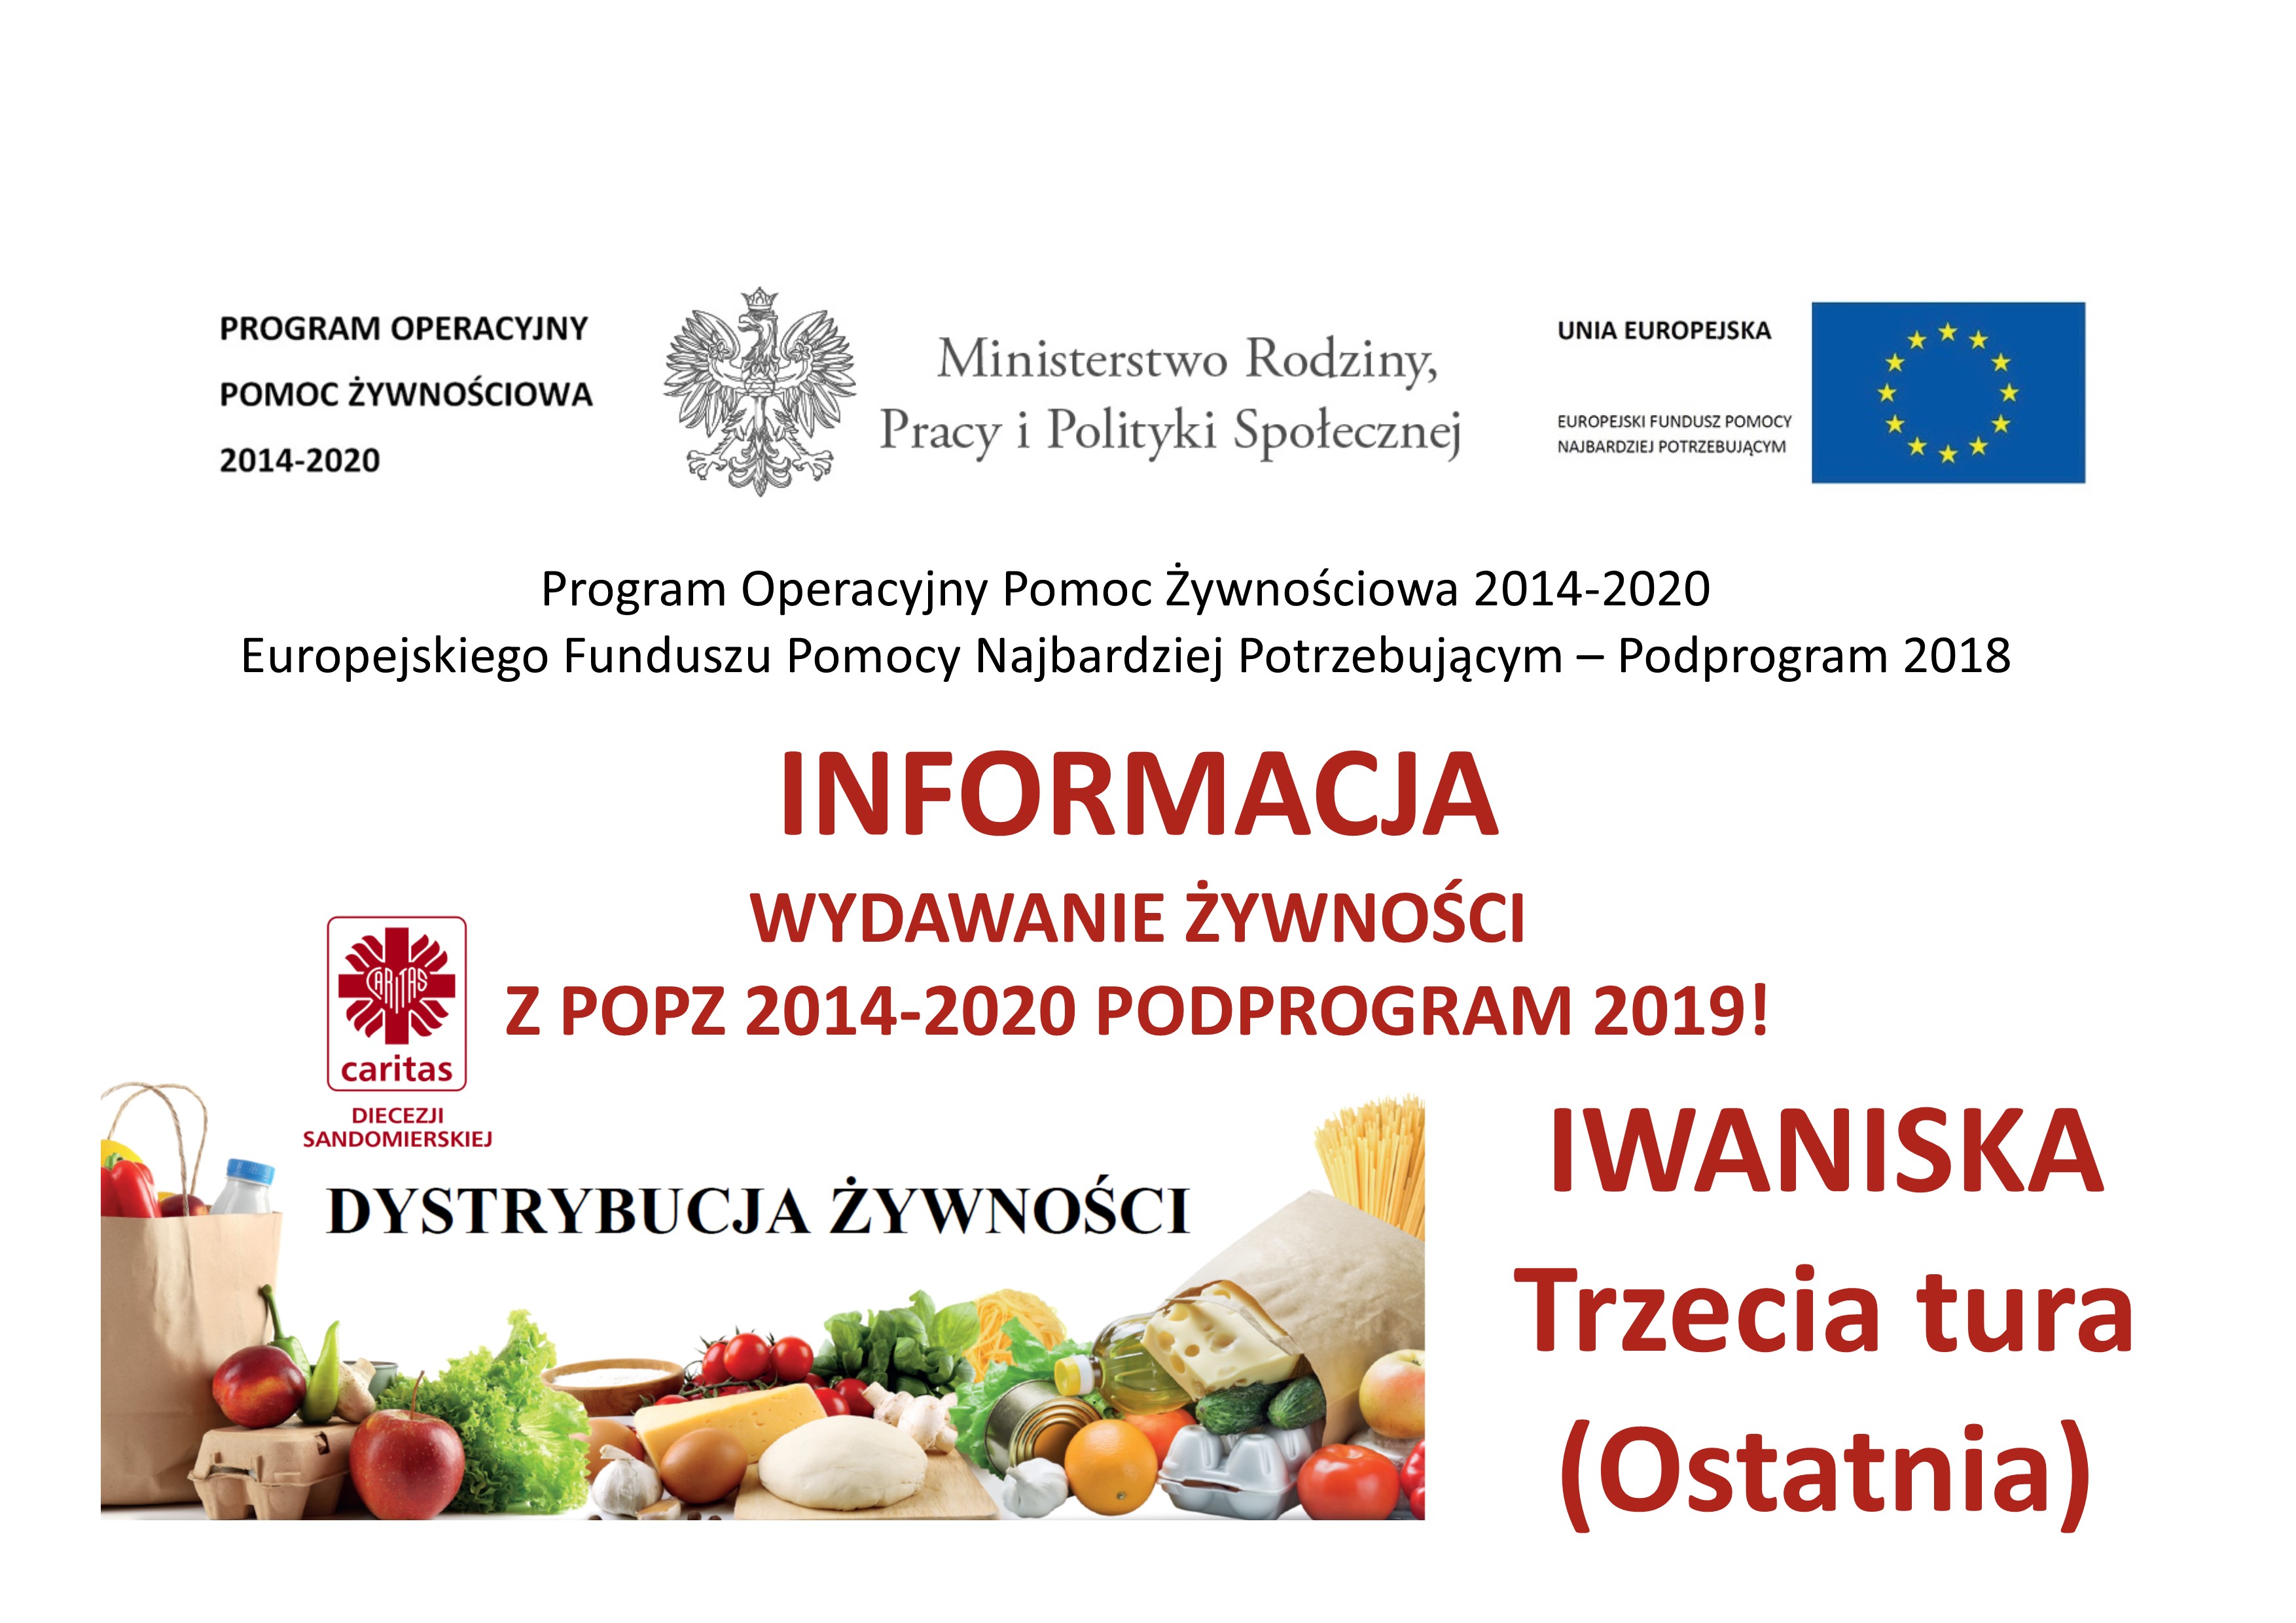 Wydawanie żywności - Podprogram 2019 - Osoby z OPS Iwaniska